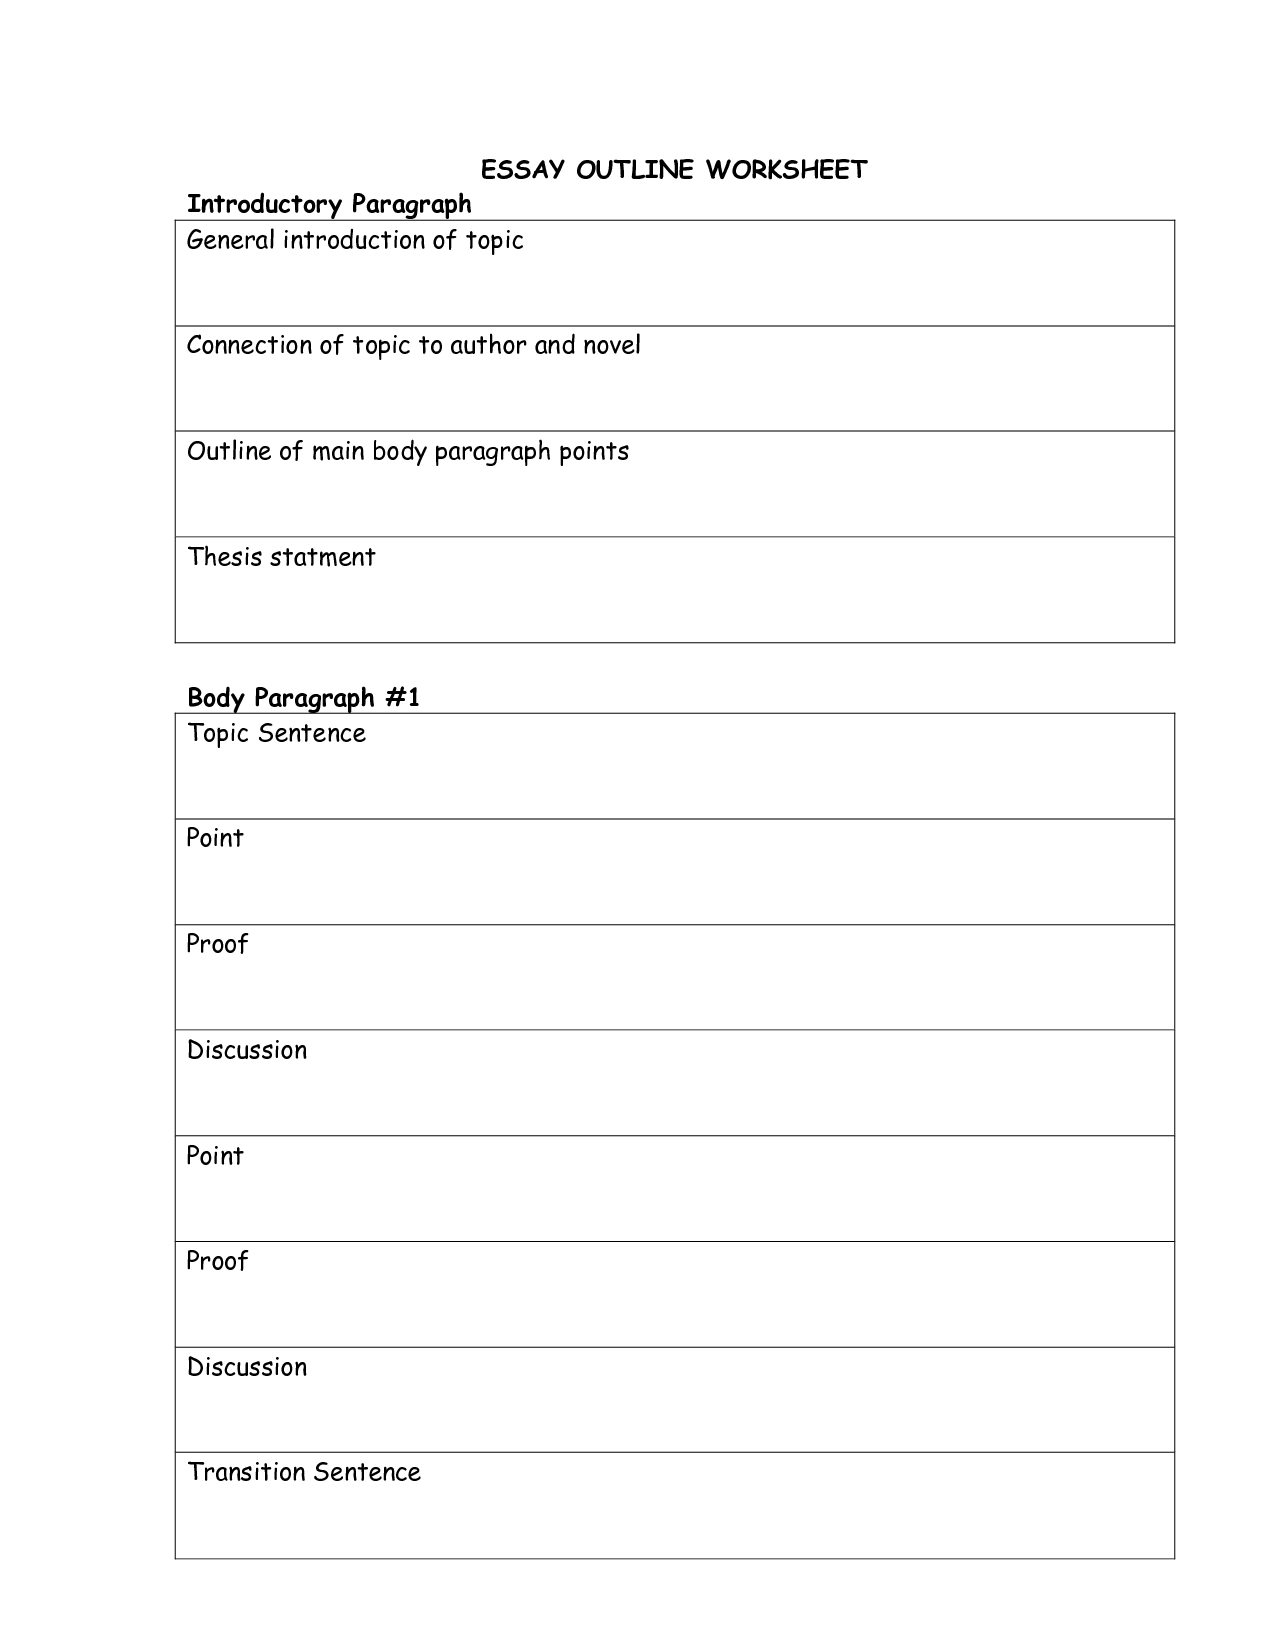 11 Best Images of Printable Outline For Essay Blank Essay Outline Inside Argumentative Essay Outline Worksheet